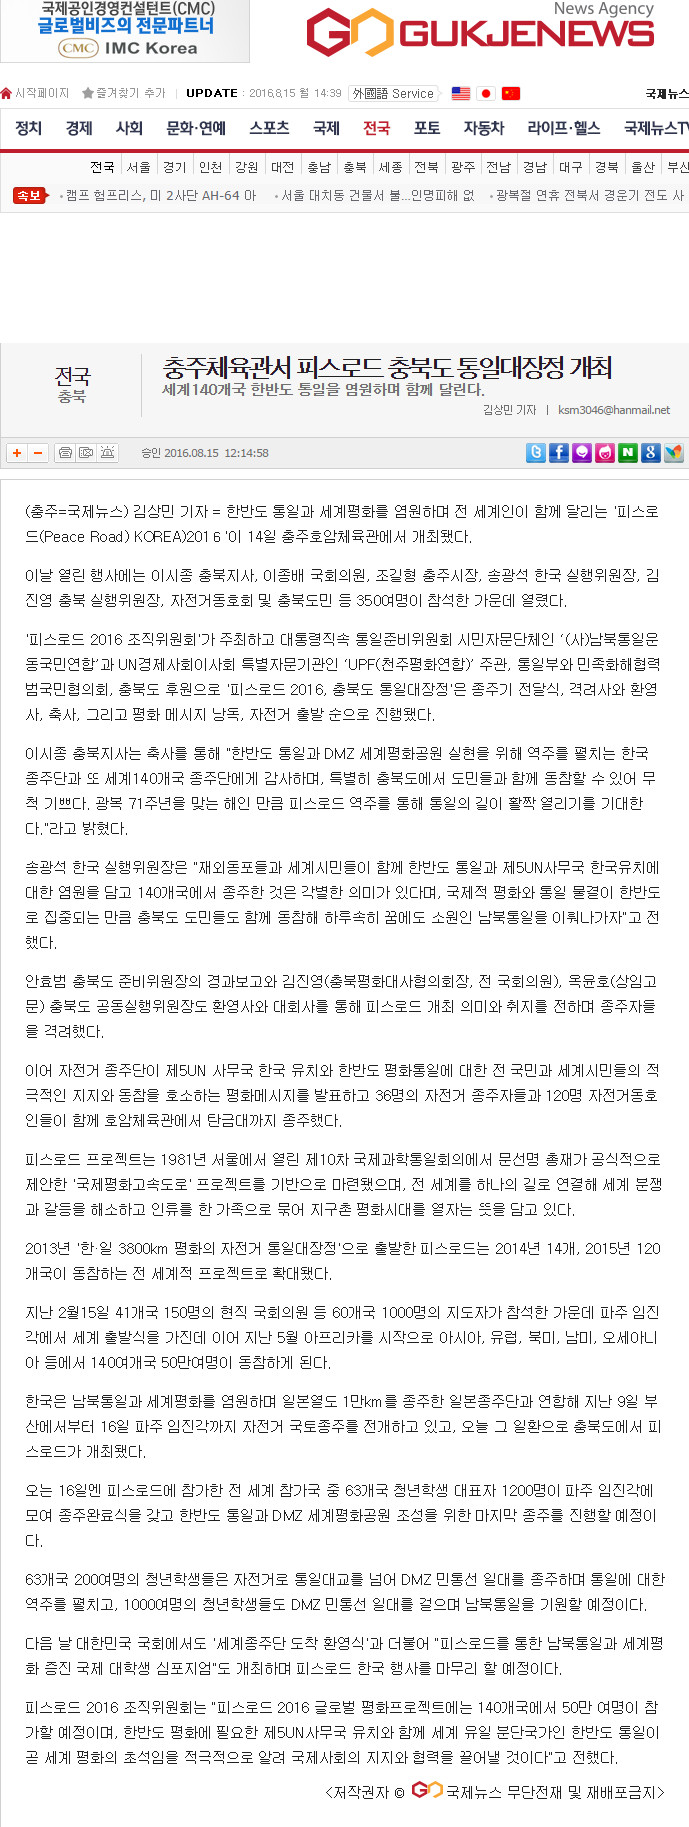 20160815 [국제뉴스] 충주체육관서 피스로드 충북도 통일대장정 개최.jpg